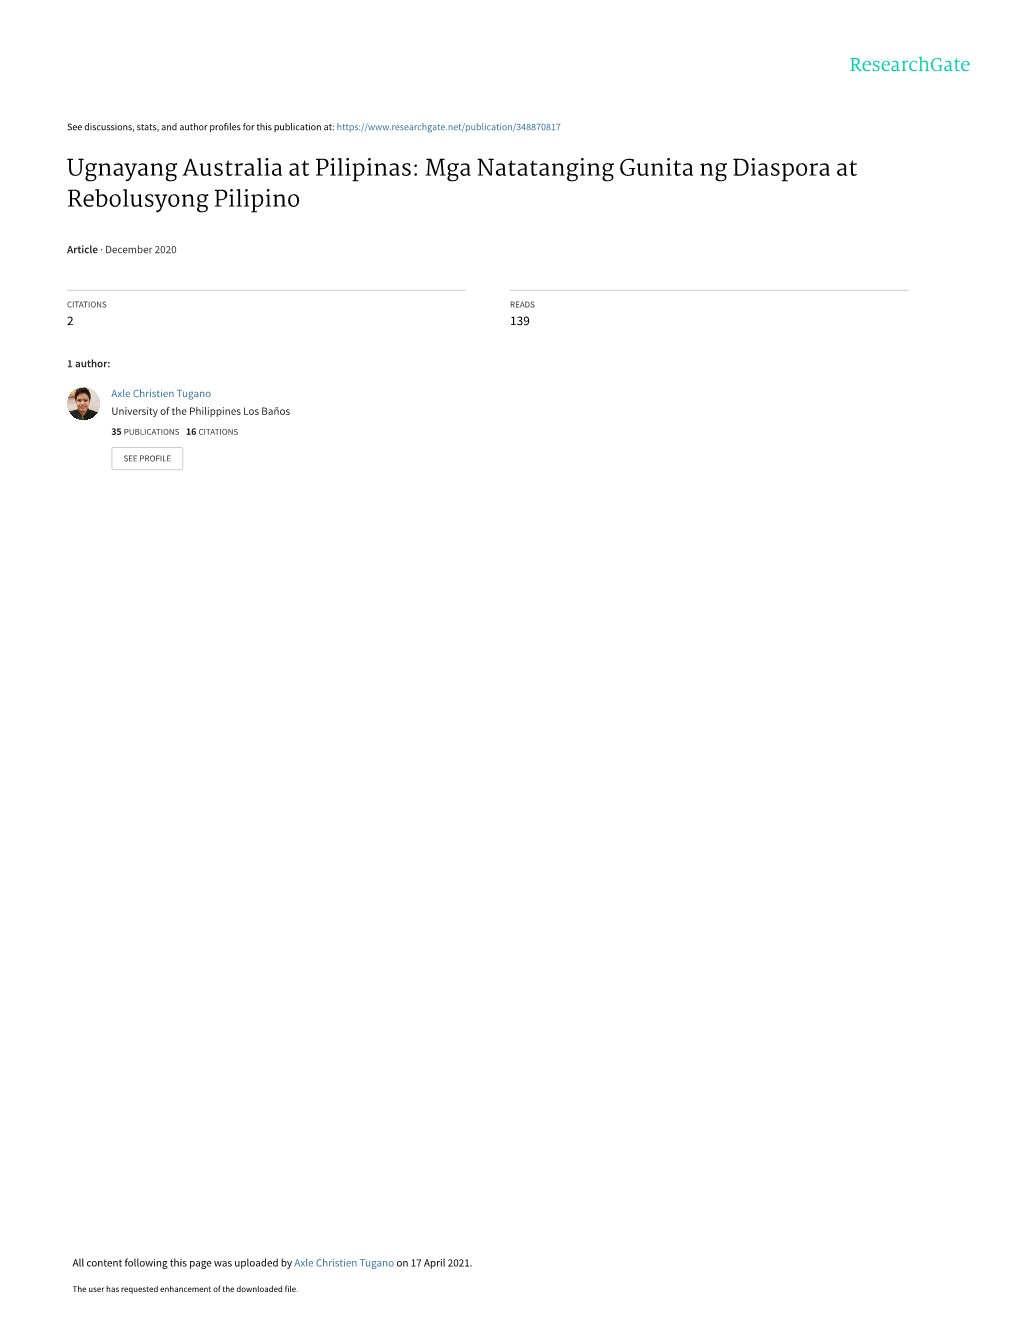 Ugnayang Australia at Pilipinas: Mga Natatanging Gunita Ng Diaspora at Rebolusyong Pilipino